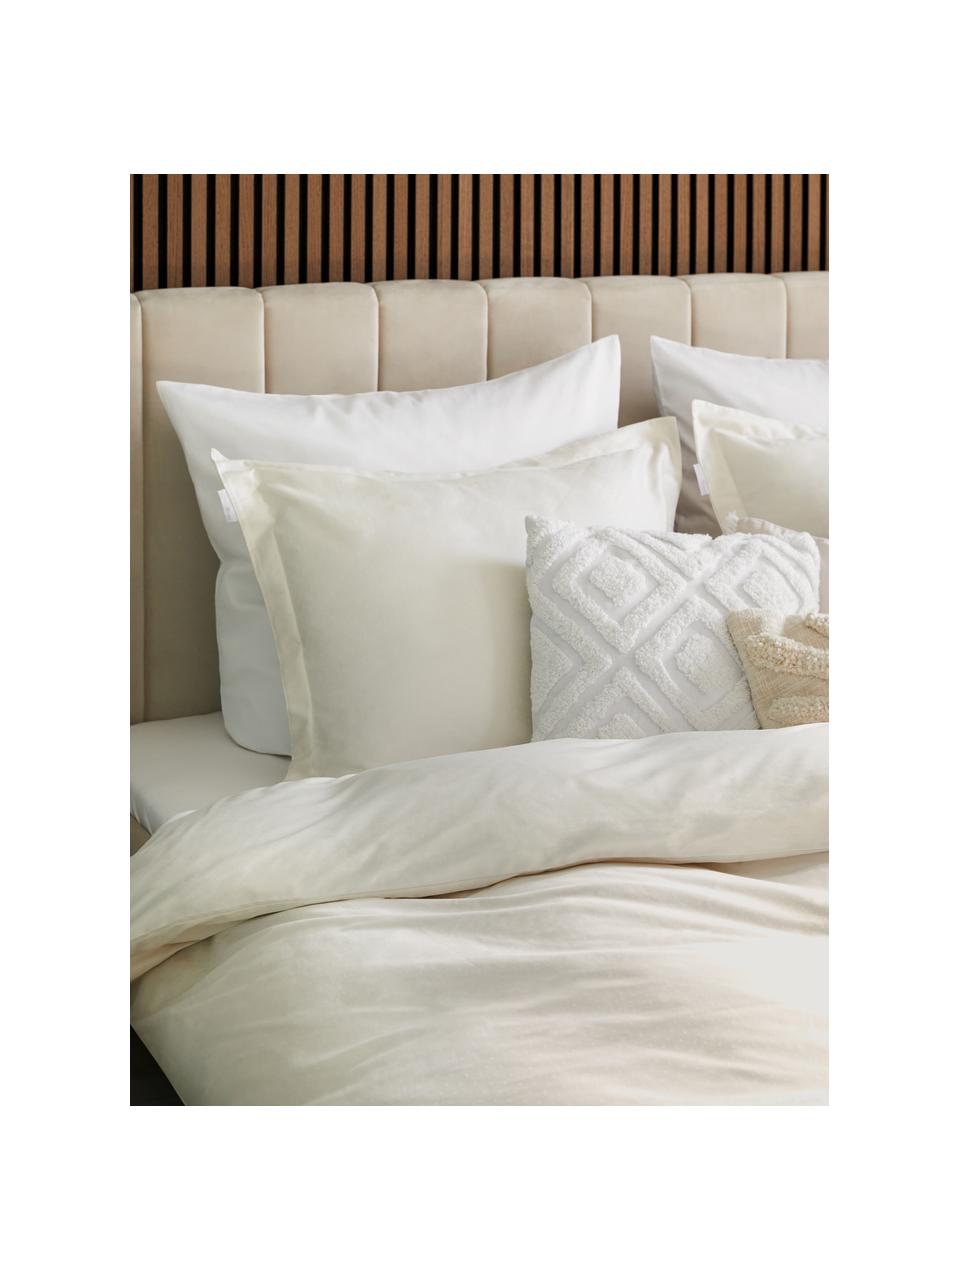 Cotone in cotone colore: antracite/bianco Federa cuscino volante piatto 50x70x70 cm Douceur dIntérieur Optic antracite/bianco 